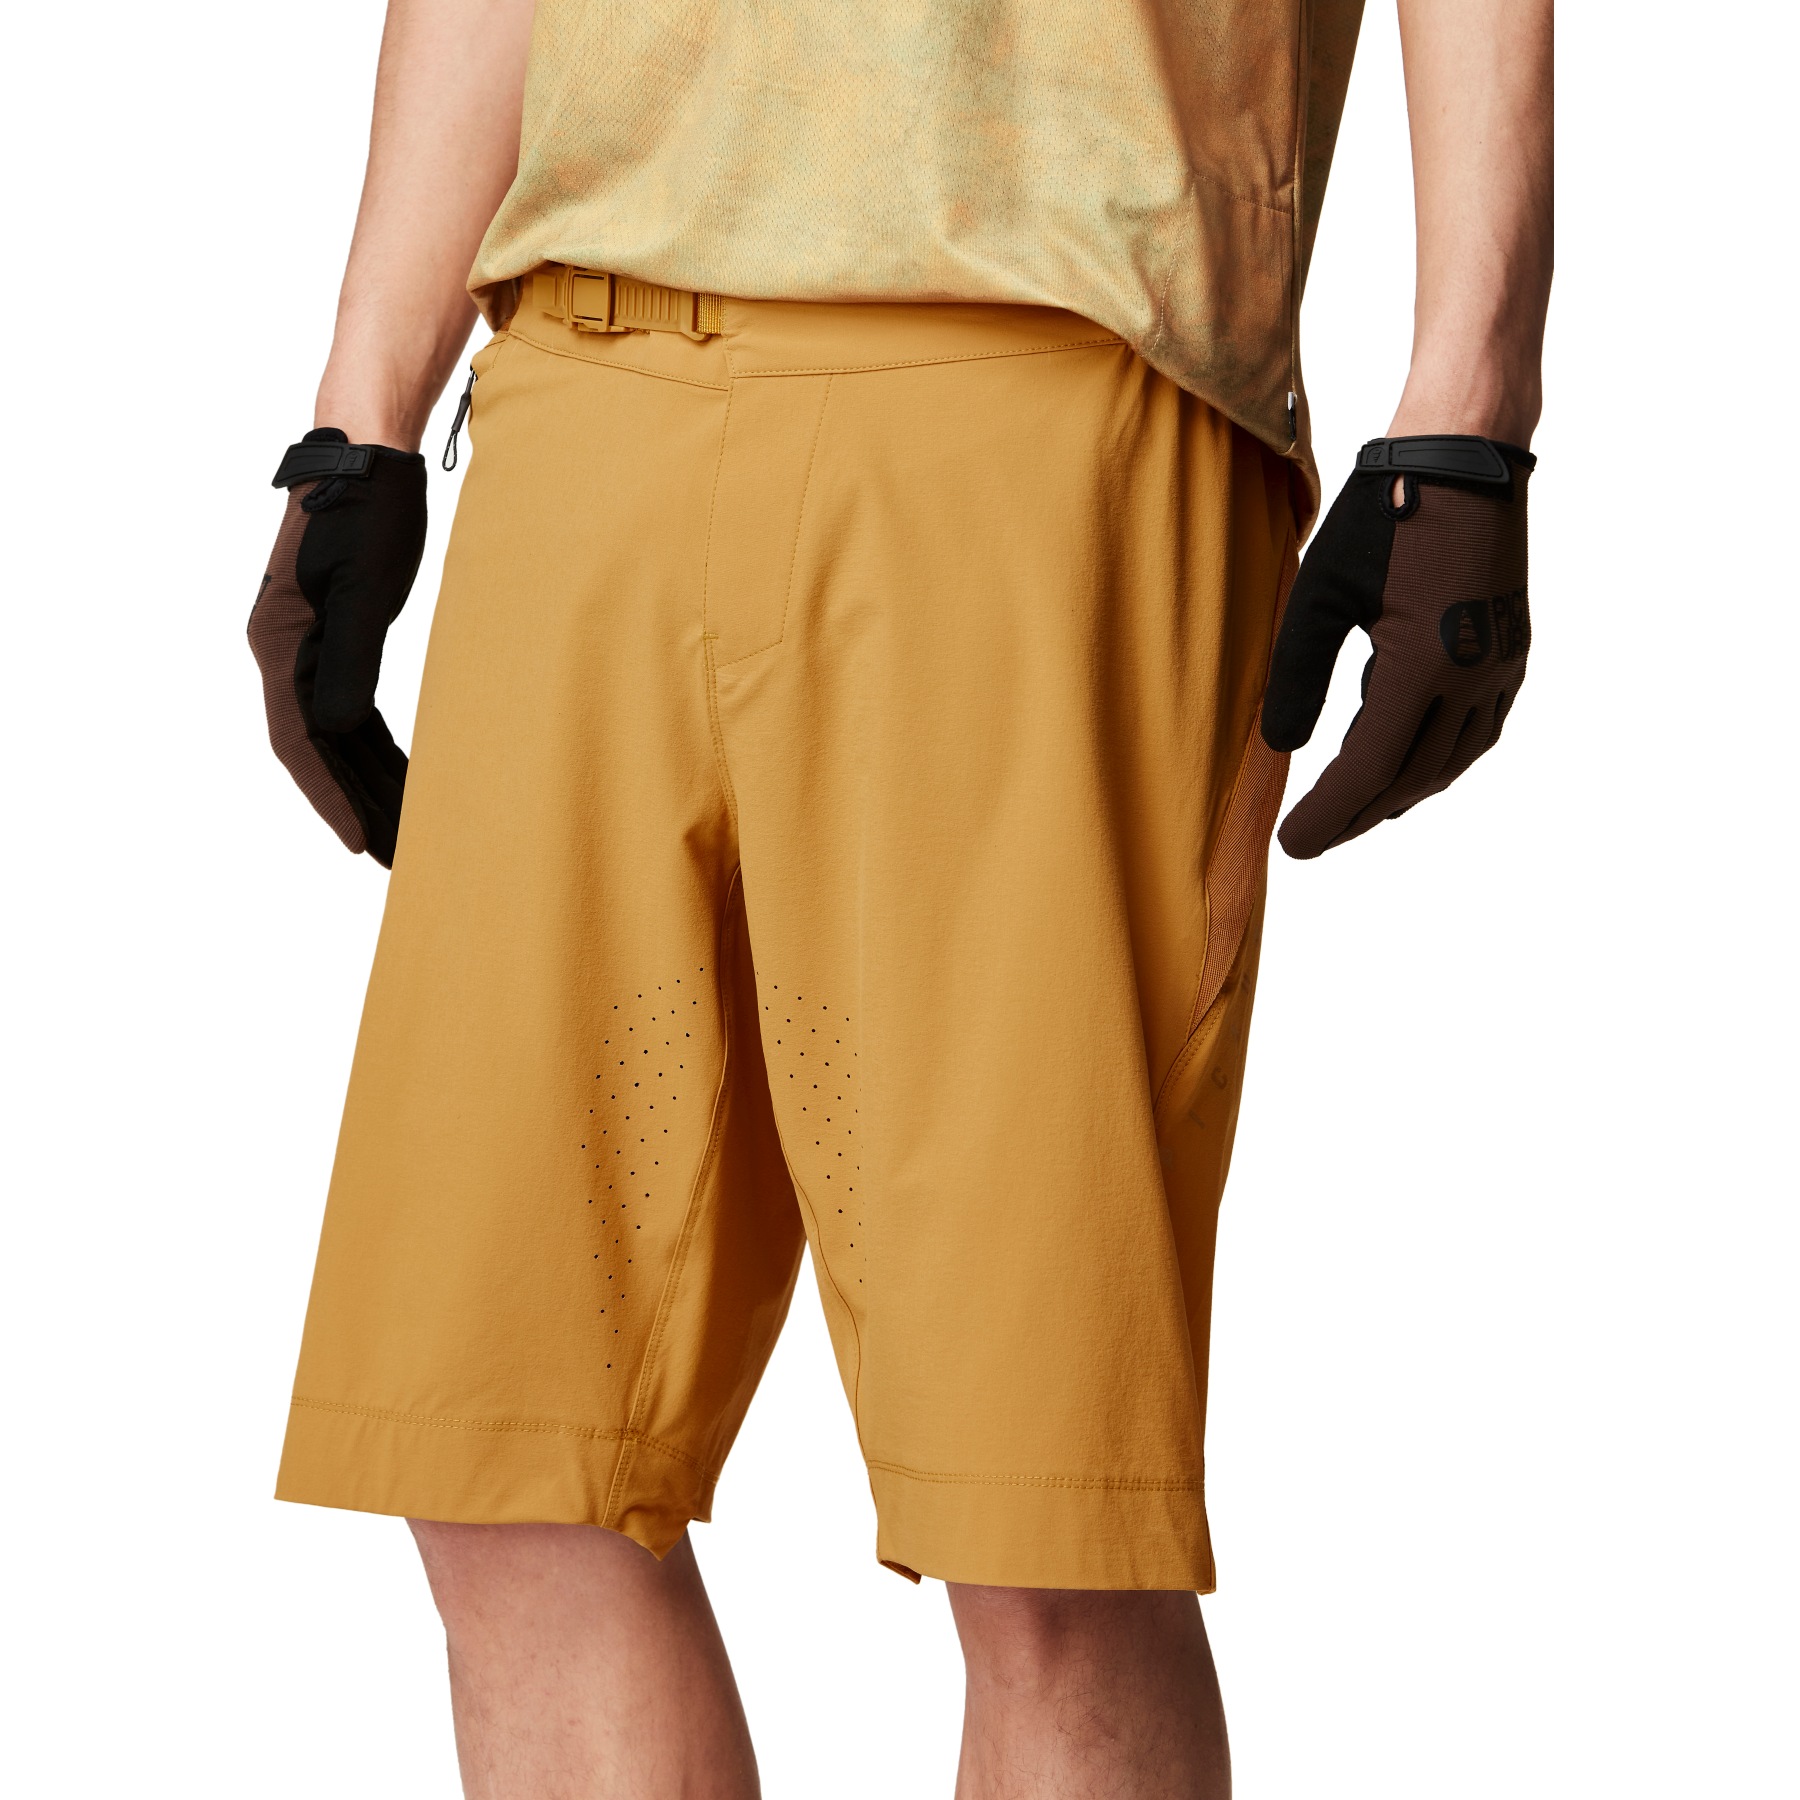 Produktbild von Picture Vellir 21 Inch Stretch Shorts Herren - Spruce Yellow